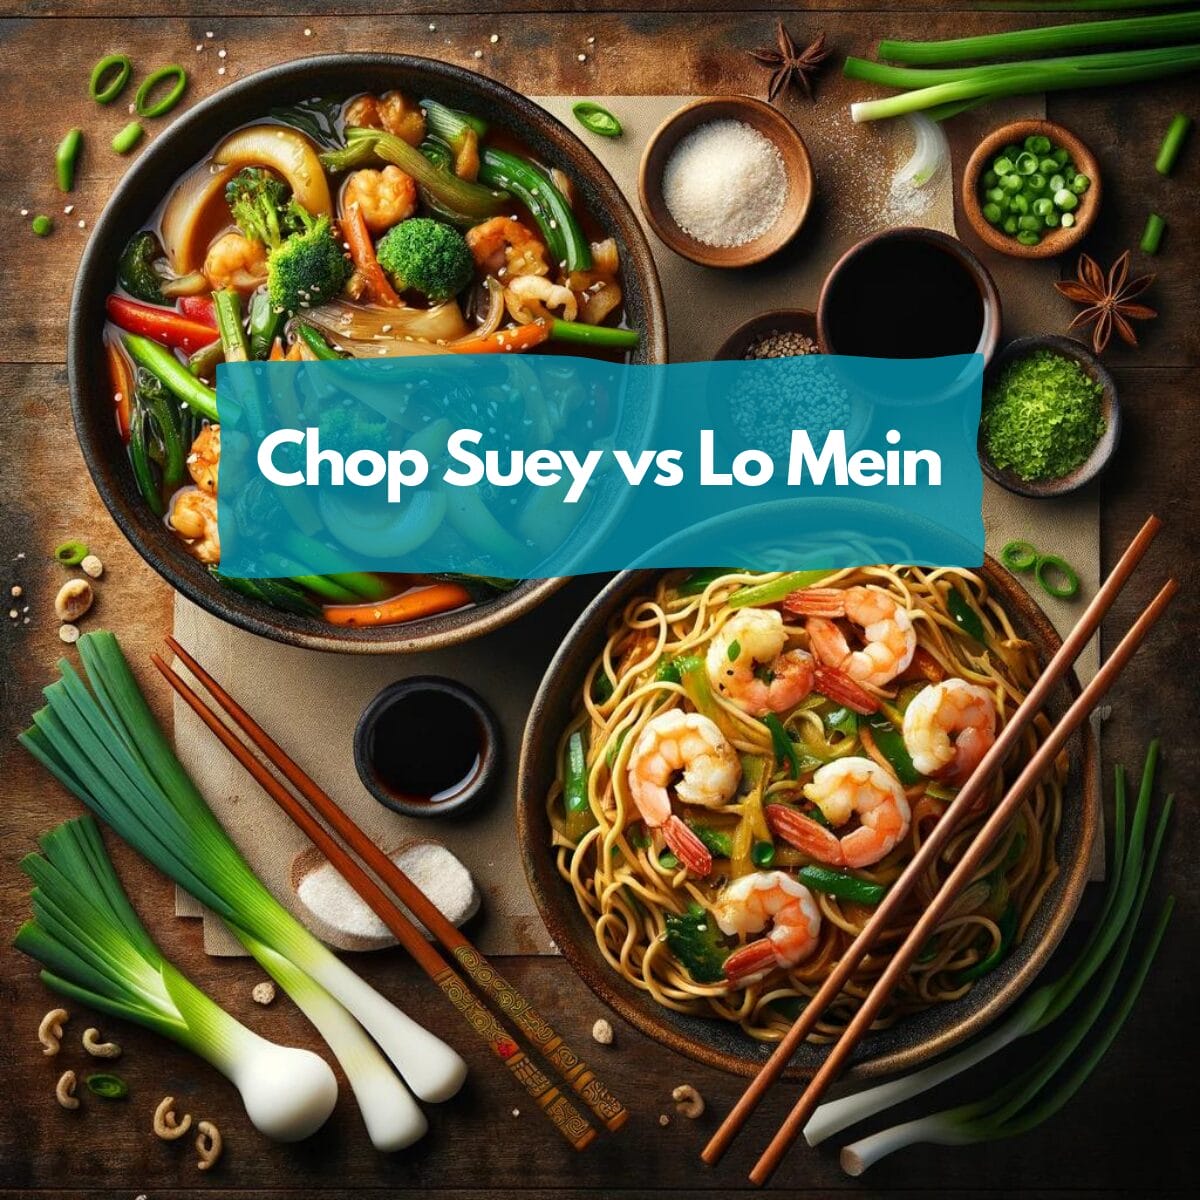 Chop suey vs lo mein